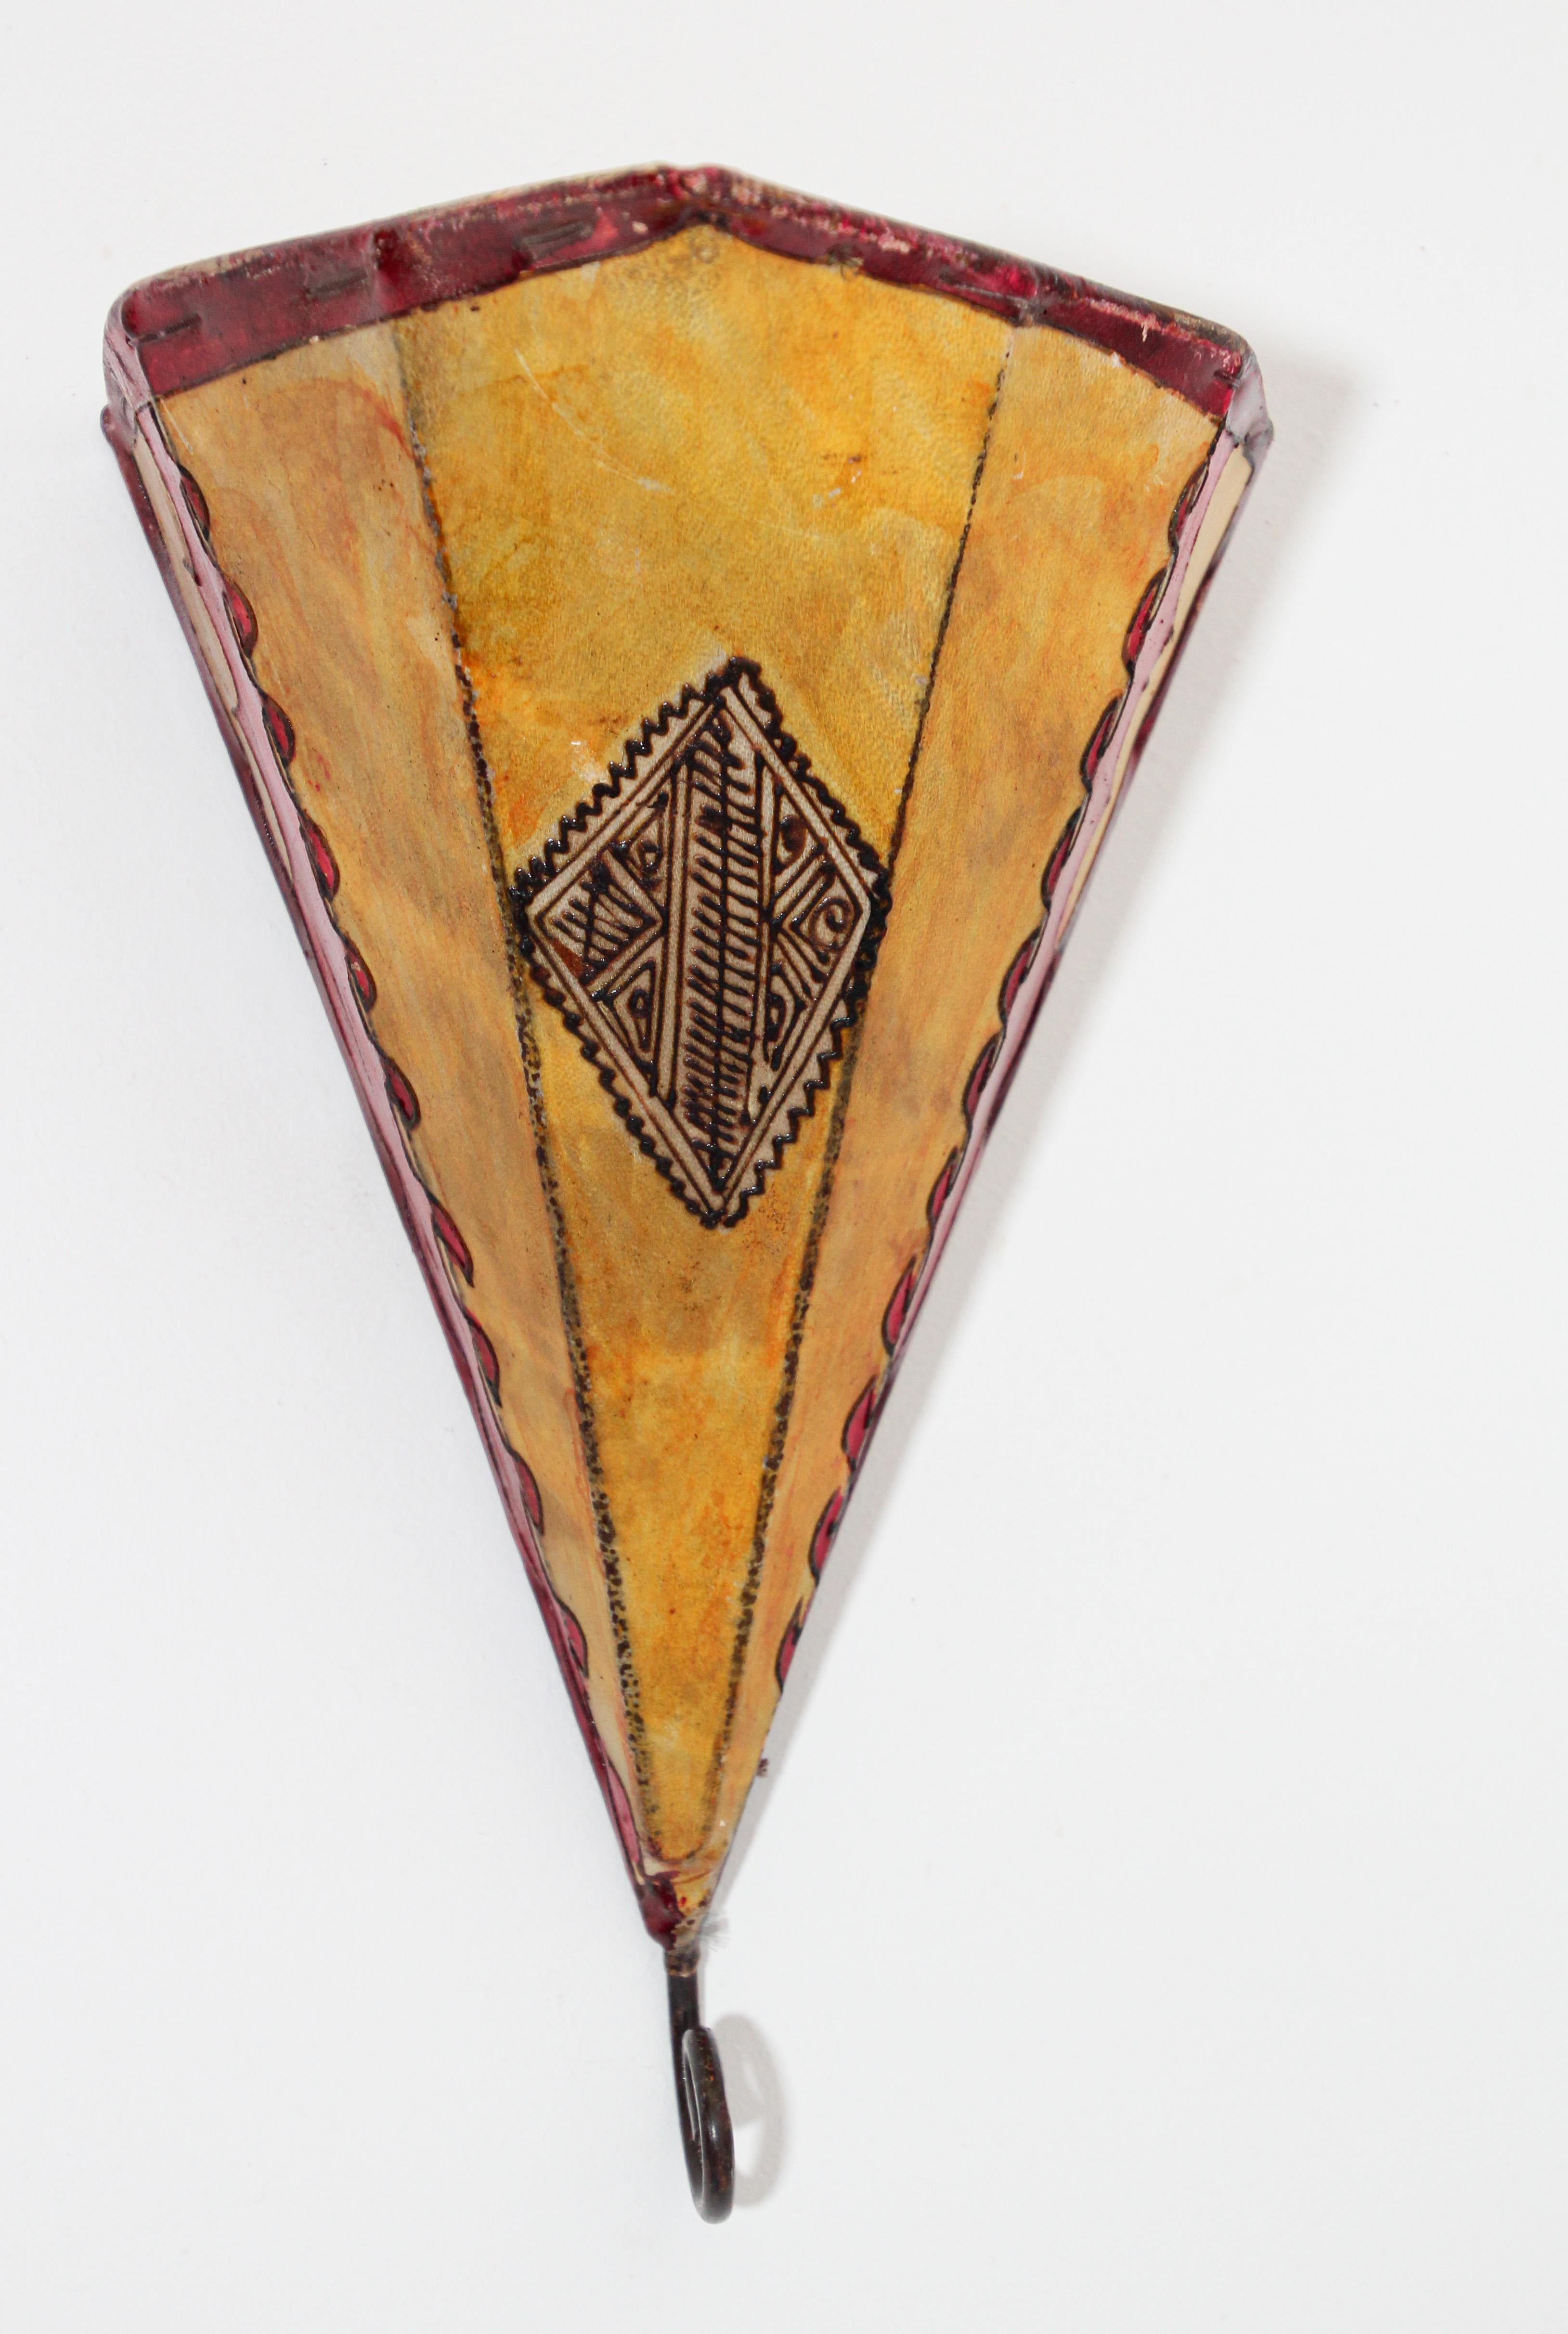 Afrikanische Stammeskunst Pergament Wandleuchte mit einer großen Dreiecksform aus Leder auf Eisen genäht und handbemalt Oberfläche.
Diese Kunstwerke können auch als Lampenschirm für die Wand verwendet werden.
Der mit Pergament überzogene